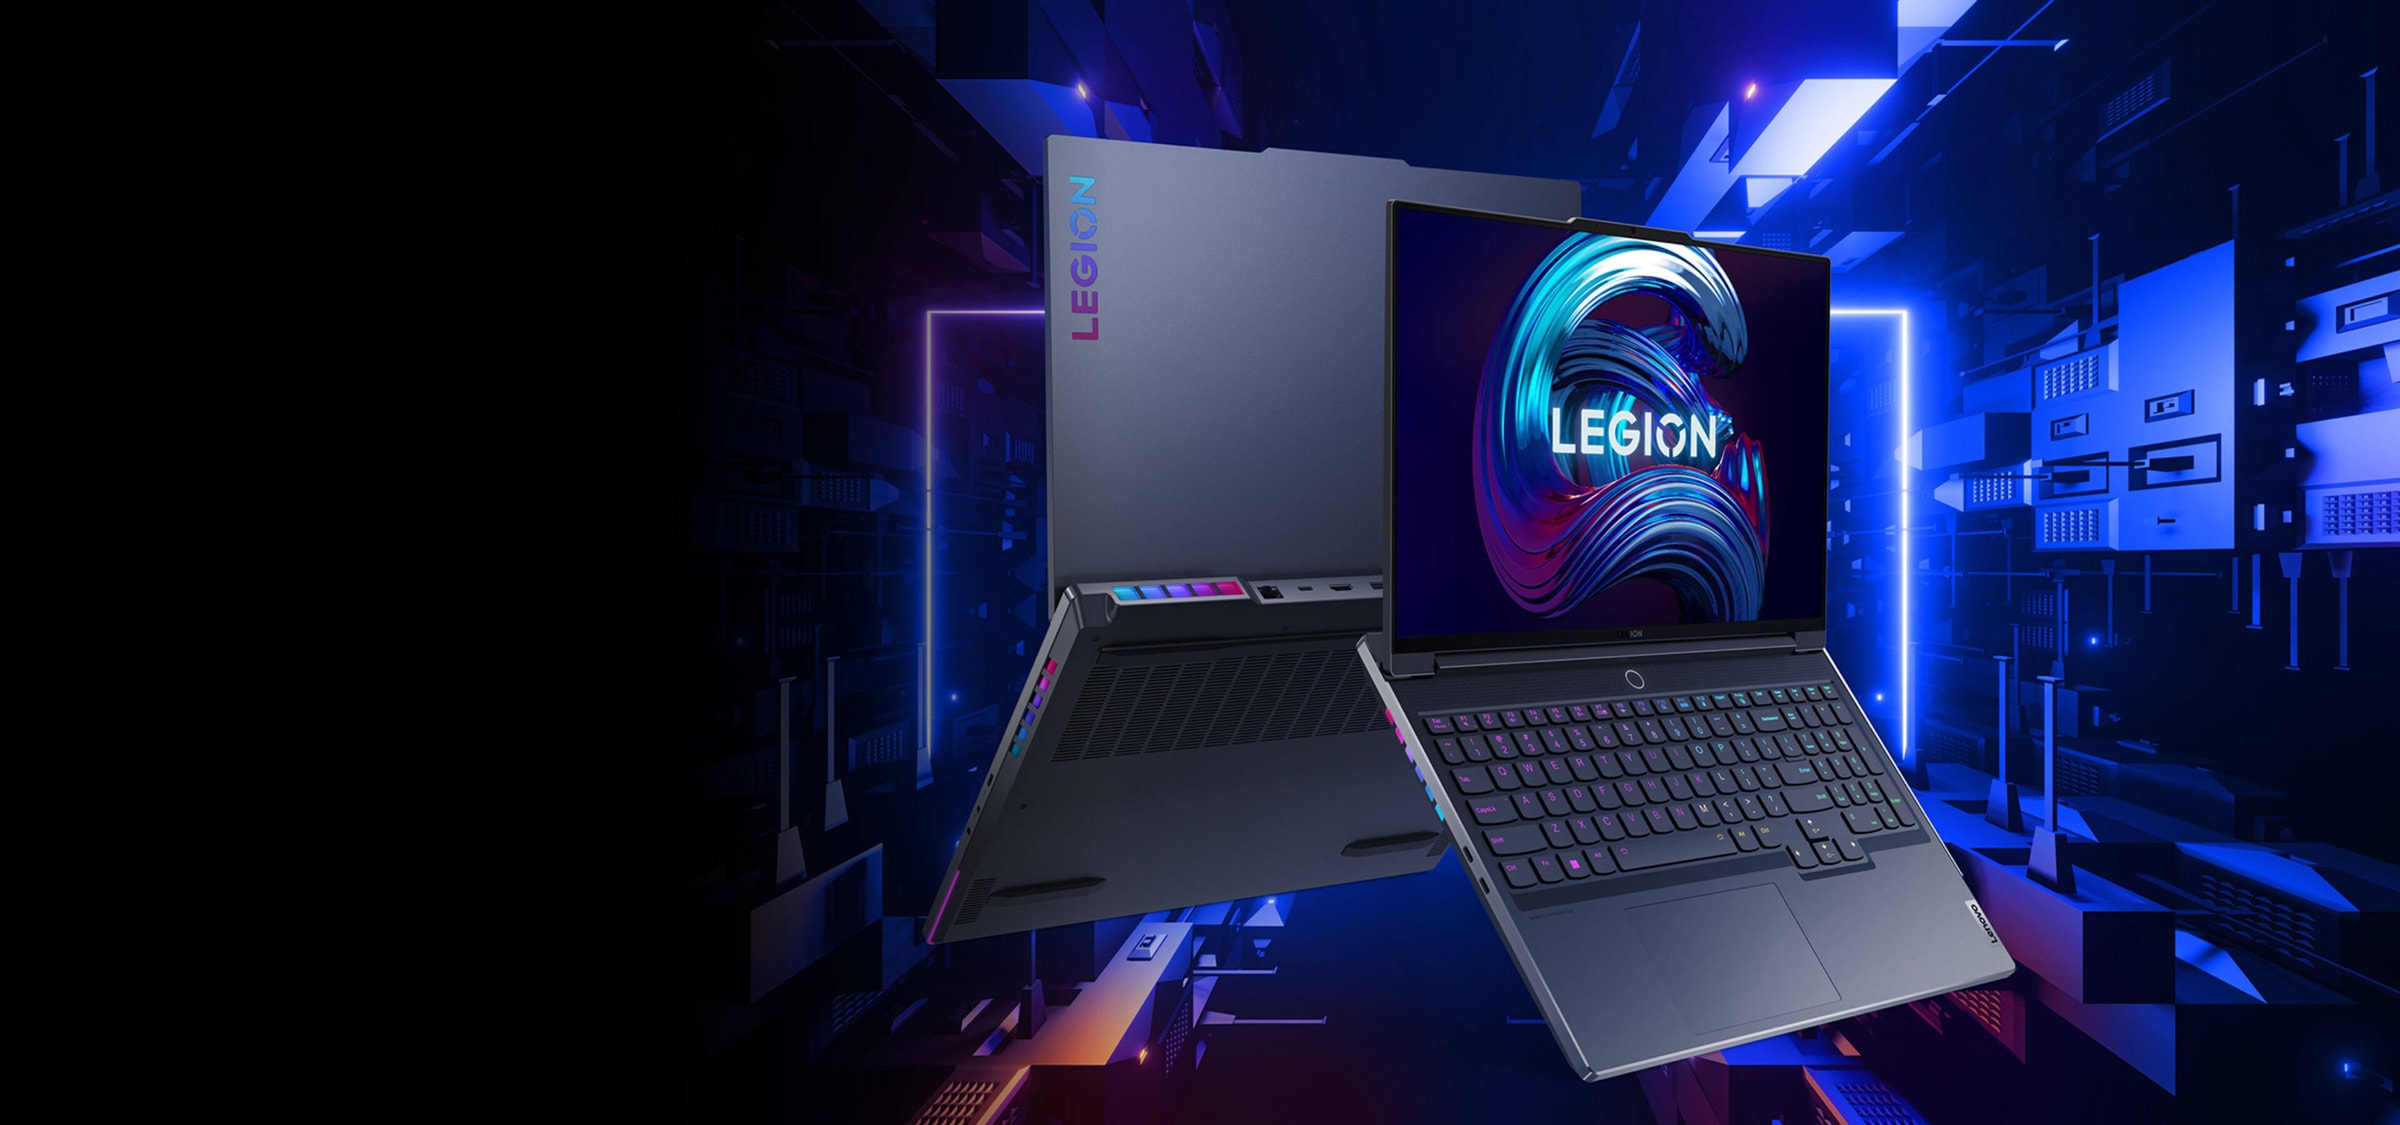 Vooraanzicht van Lenovo Legion 7-laptop 135 graden geopend, naar voren gekanteld vanaf de basis met toetsenbord, beeldscherm en gehoekt om poorten aan de linkerkant en gespiegeld aanzicht van de achterkant te tonen.